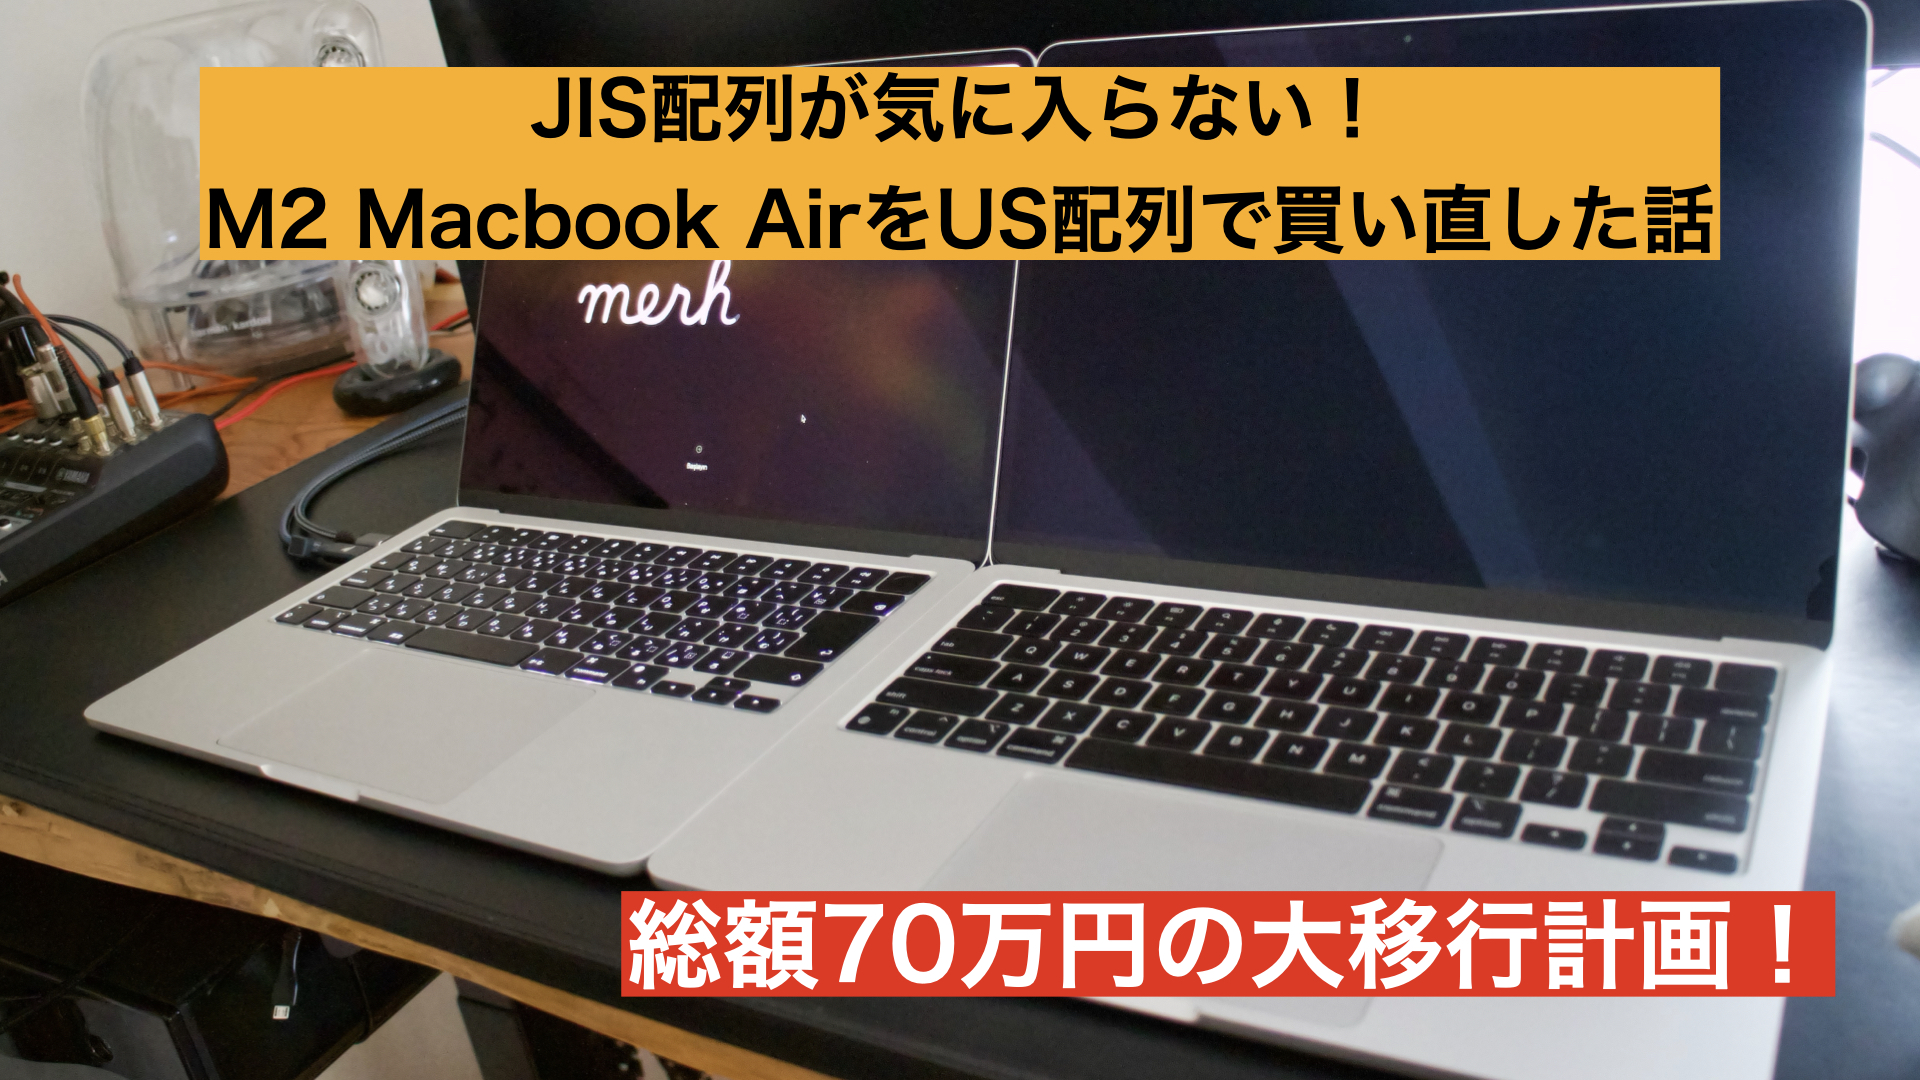 MacBook Air MVFH2JA/A USキーボードMVFH2J/A同等